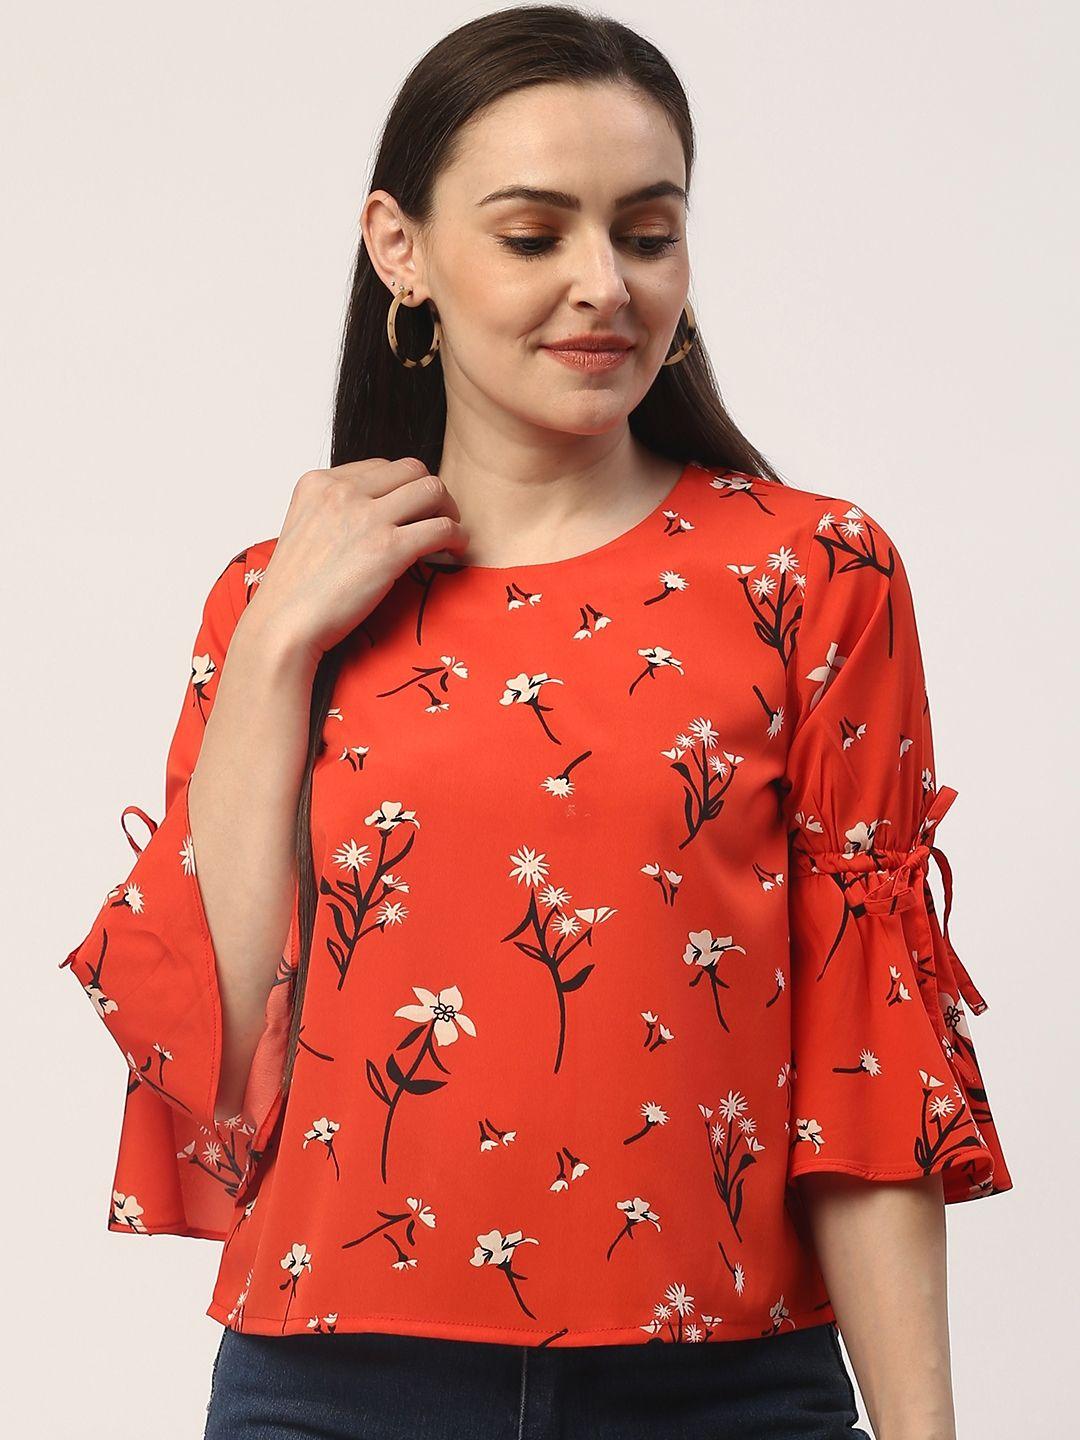 zizo by namrata bajaj women coral red & black floral printed top